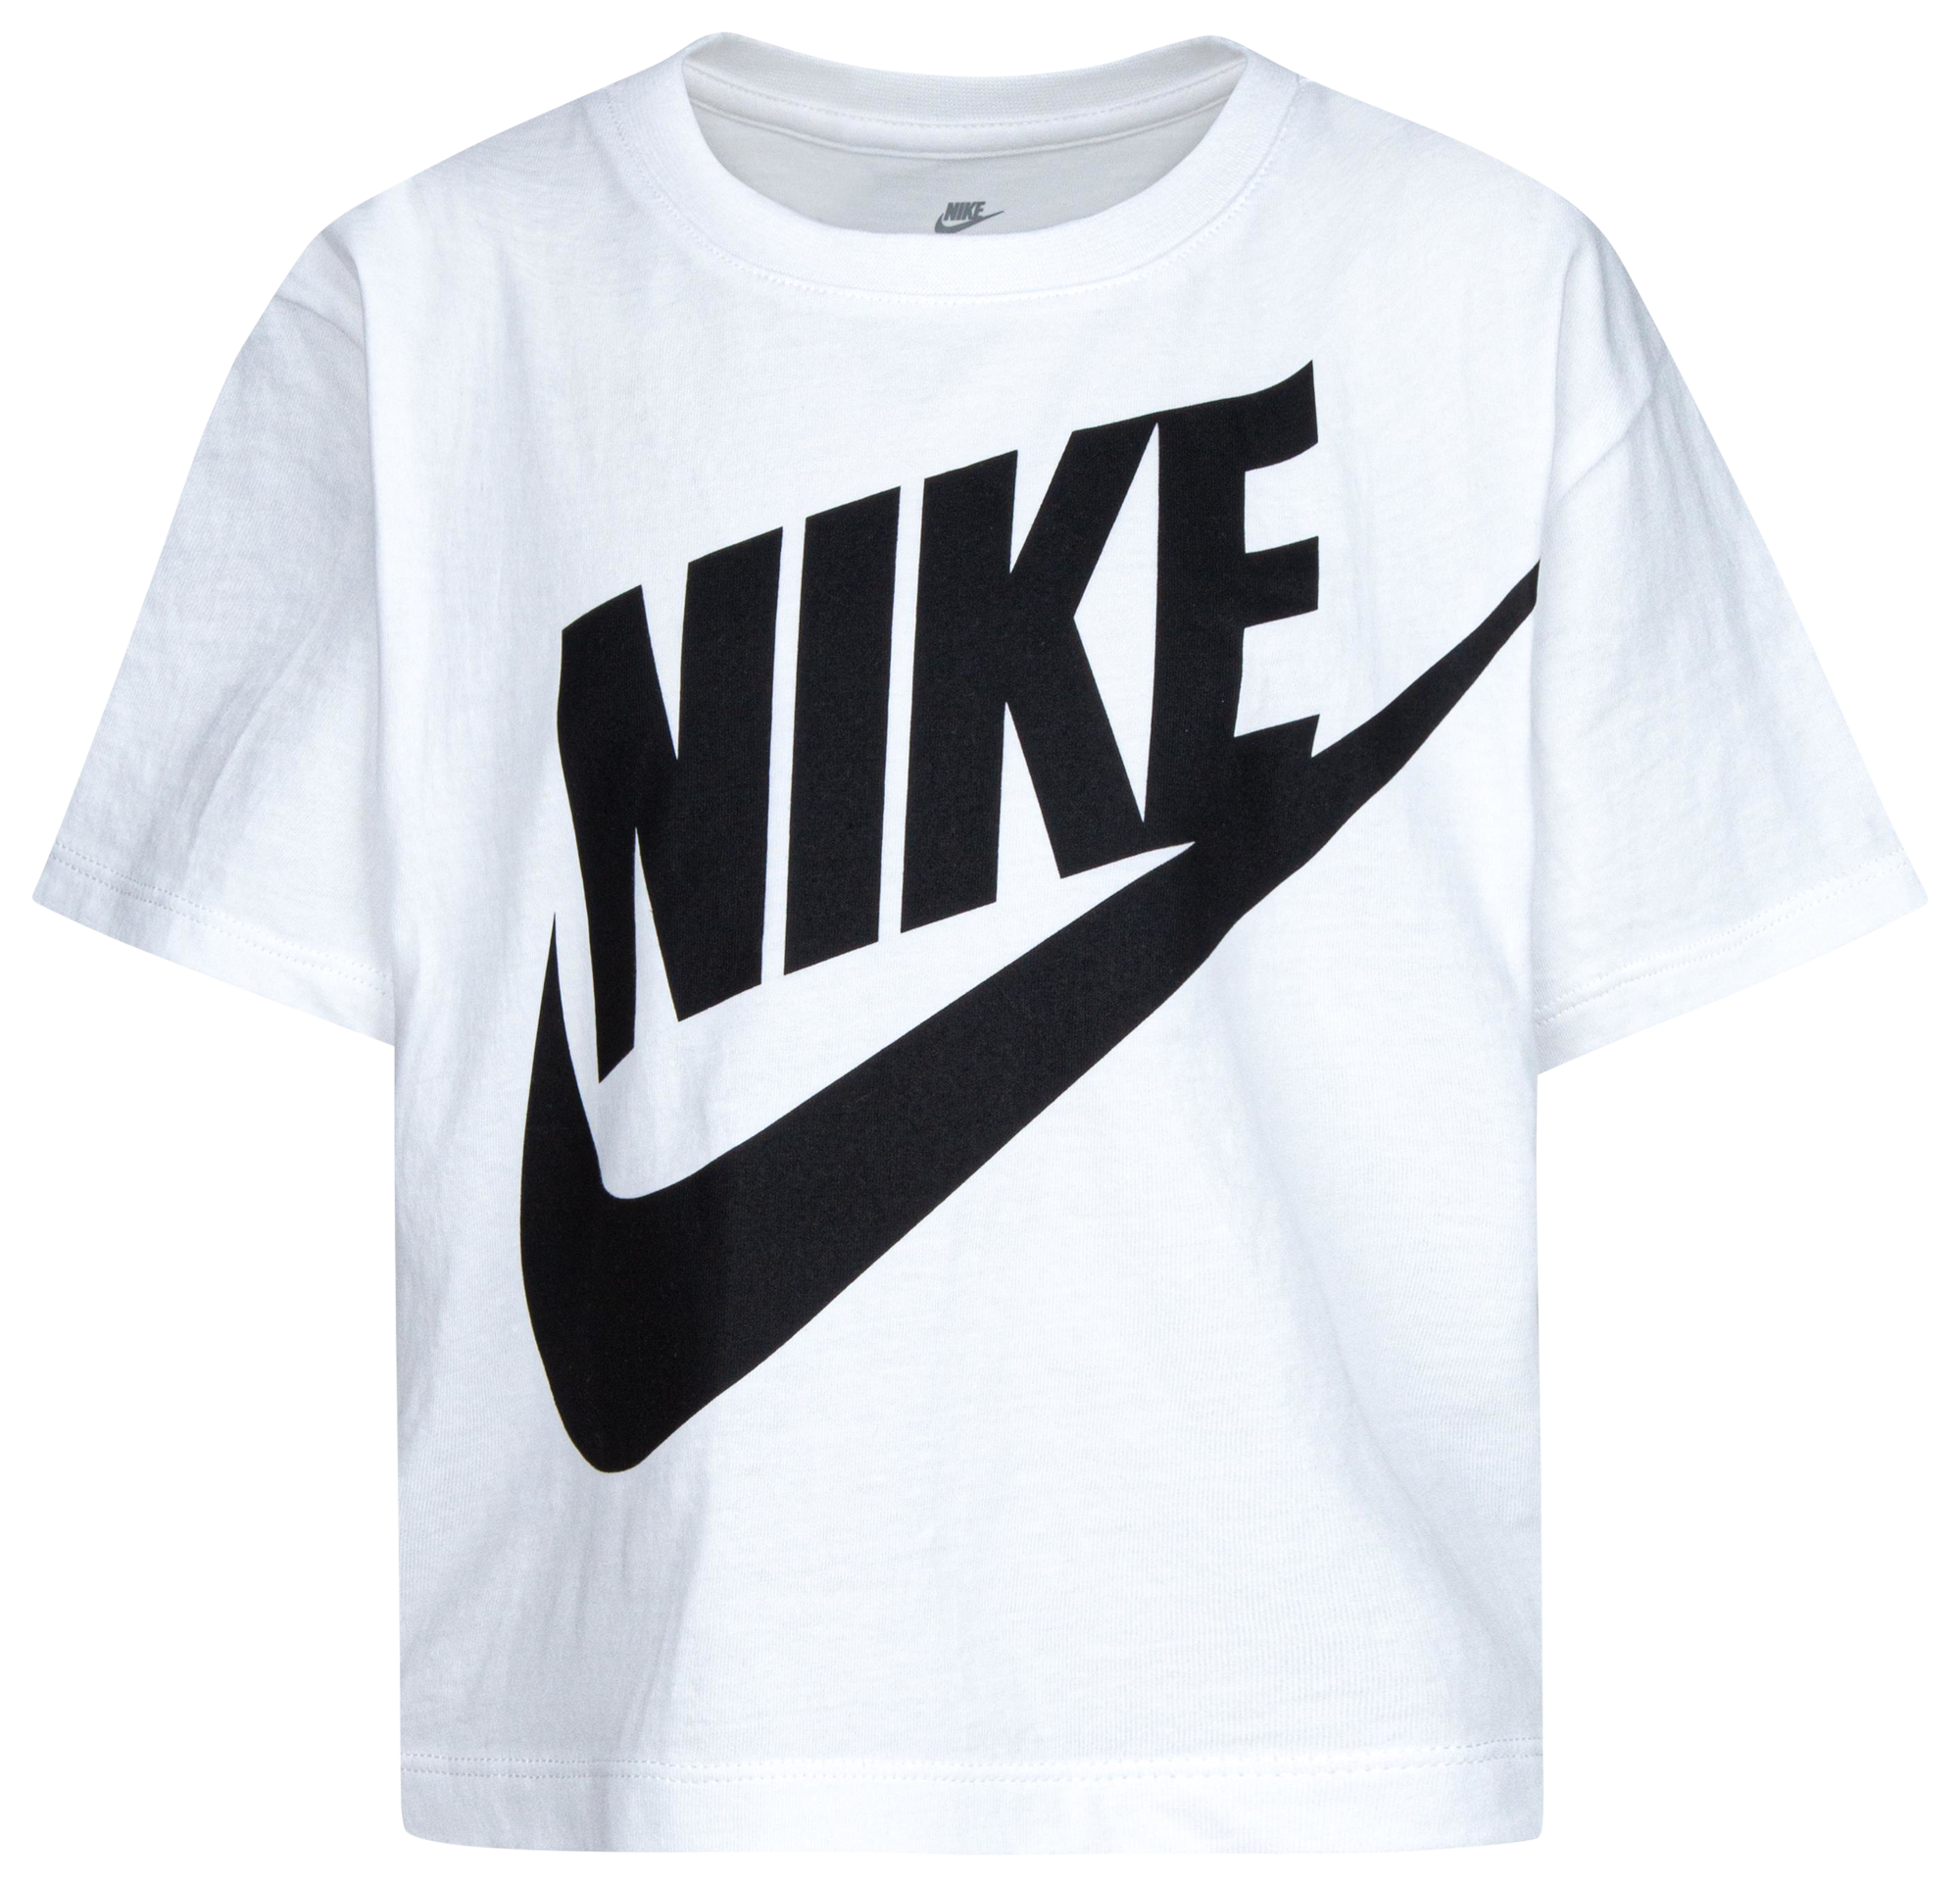 Nike Shirt 16 Icon, Nike Iconpack